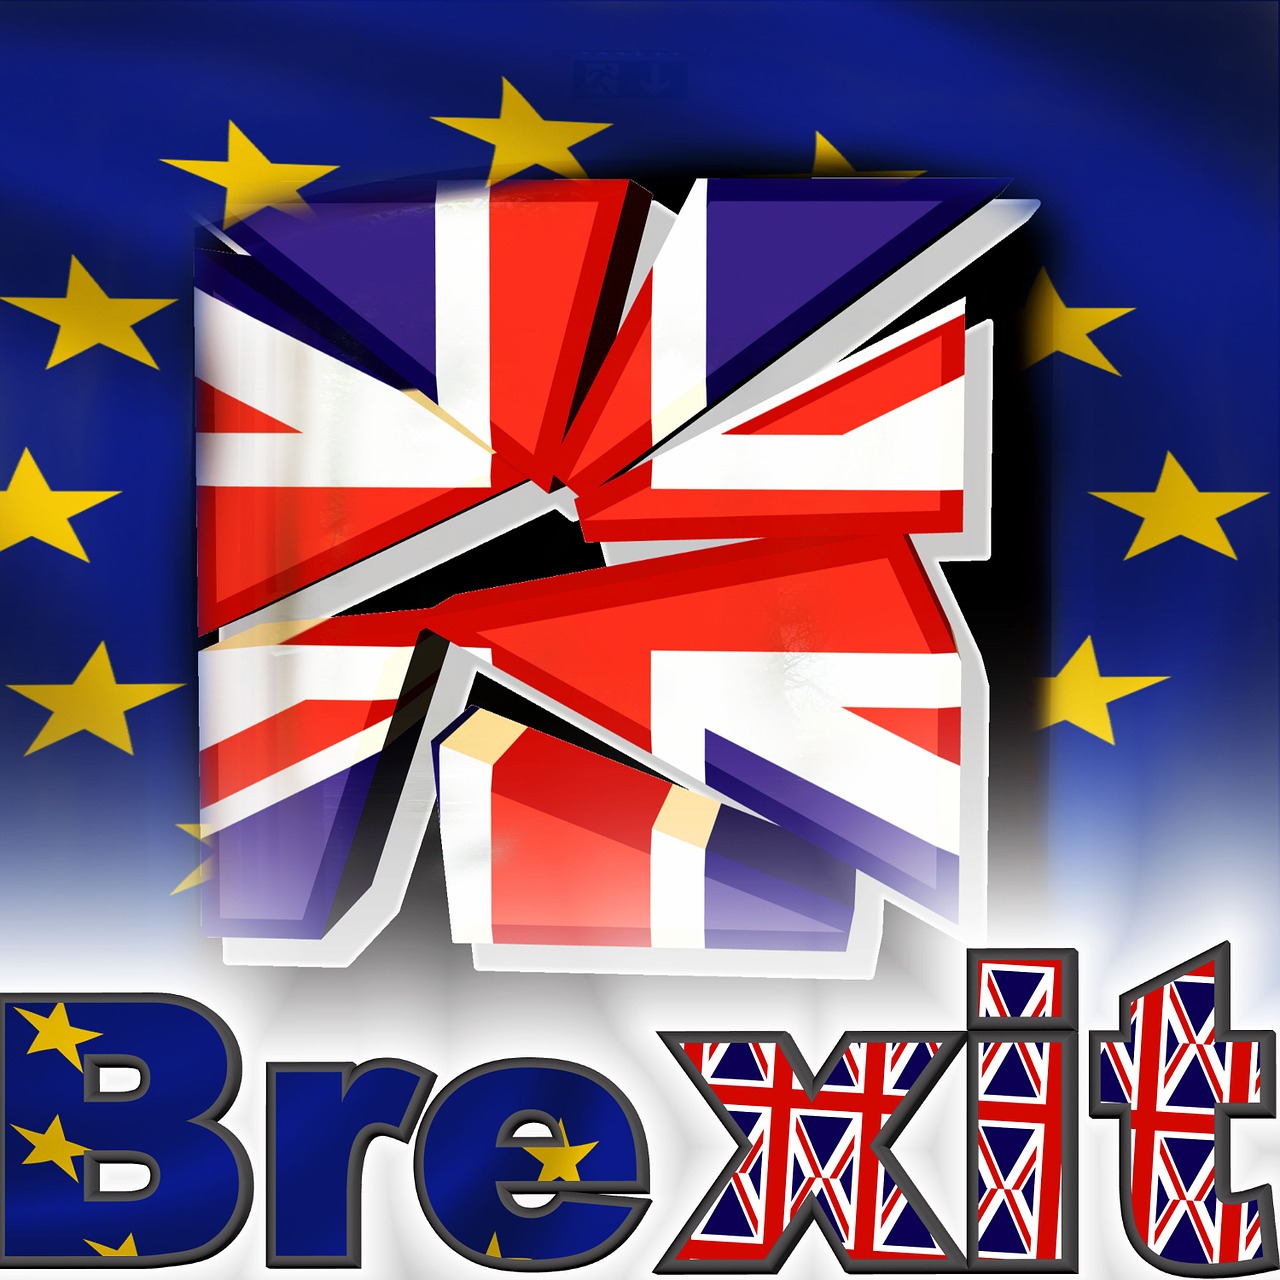 Europa, Anglija, Pasiūlytas Referendumas Dėl Jungtinės Karalystės Narystės Europos Sąjungos Referendume, Išeiti, Buvimo Vieta, Jungtinė Karalystė, Eu, Sprendimas, Vėliava, Problema